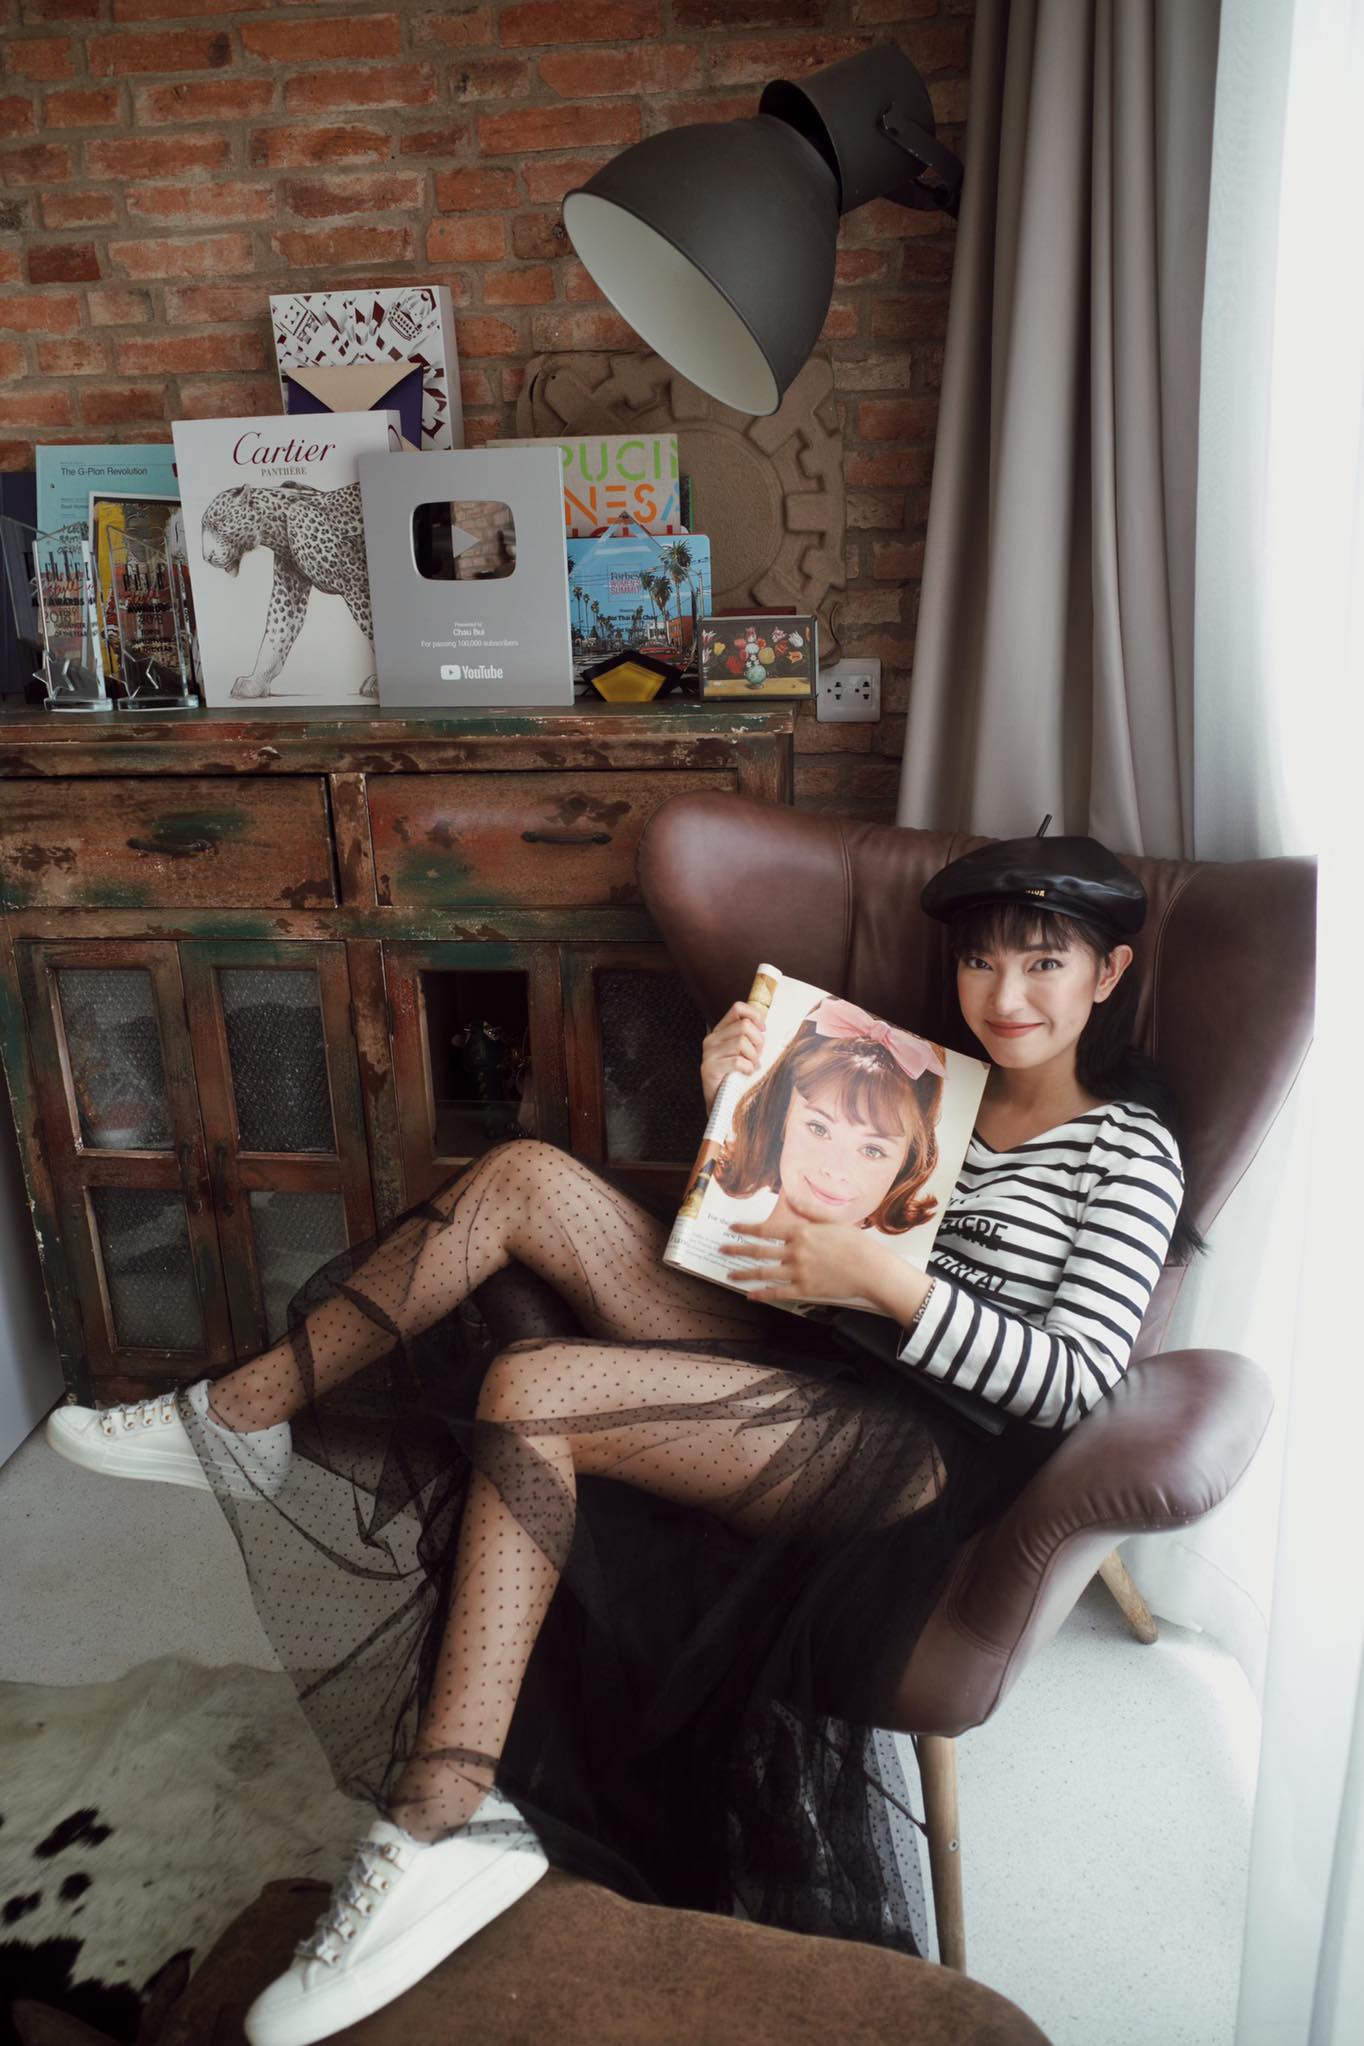 Châu Bùi: Fashionista hàng đầu Việt Nam chinh phục Forbes under 30 với triết lý sống là chính mình 5